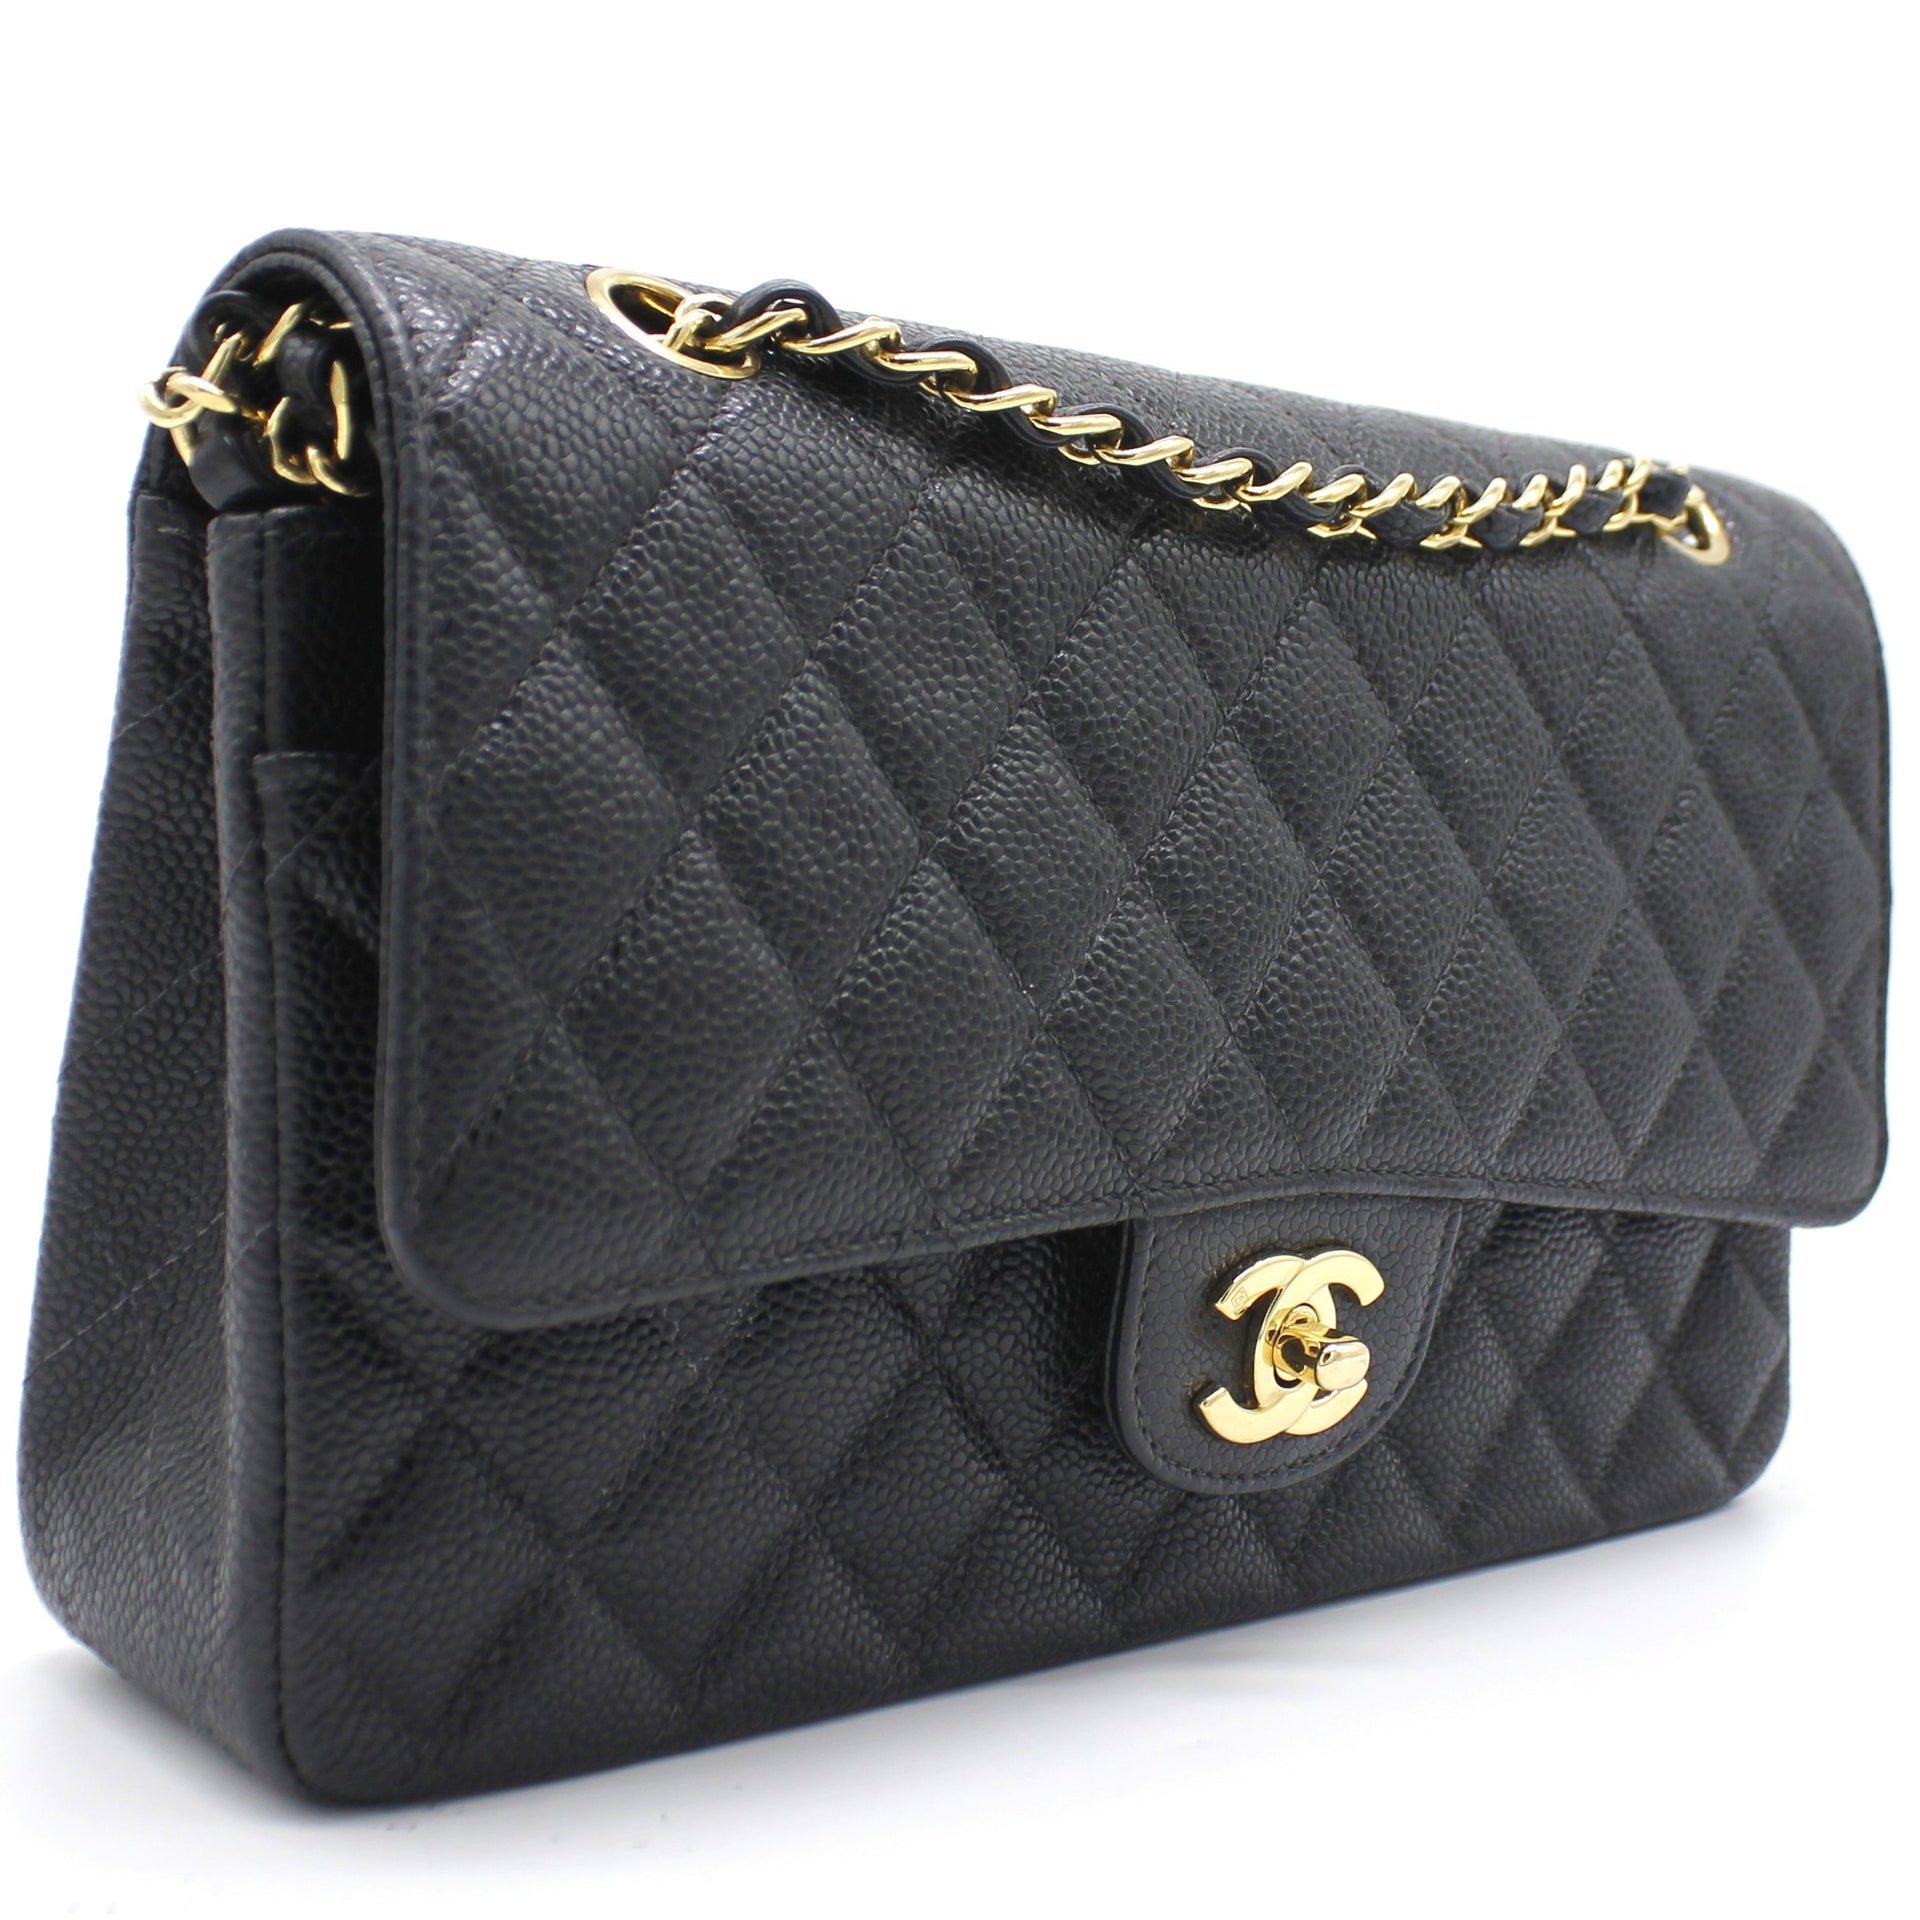 Chanel Classic Flap Bag Size Comparison  FifthAvenueGirlcom